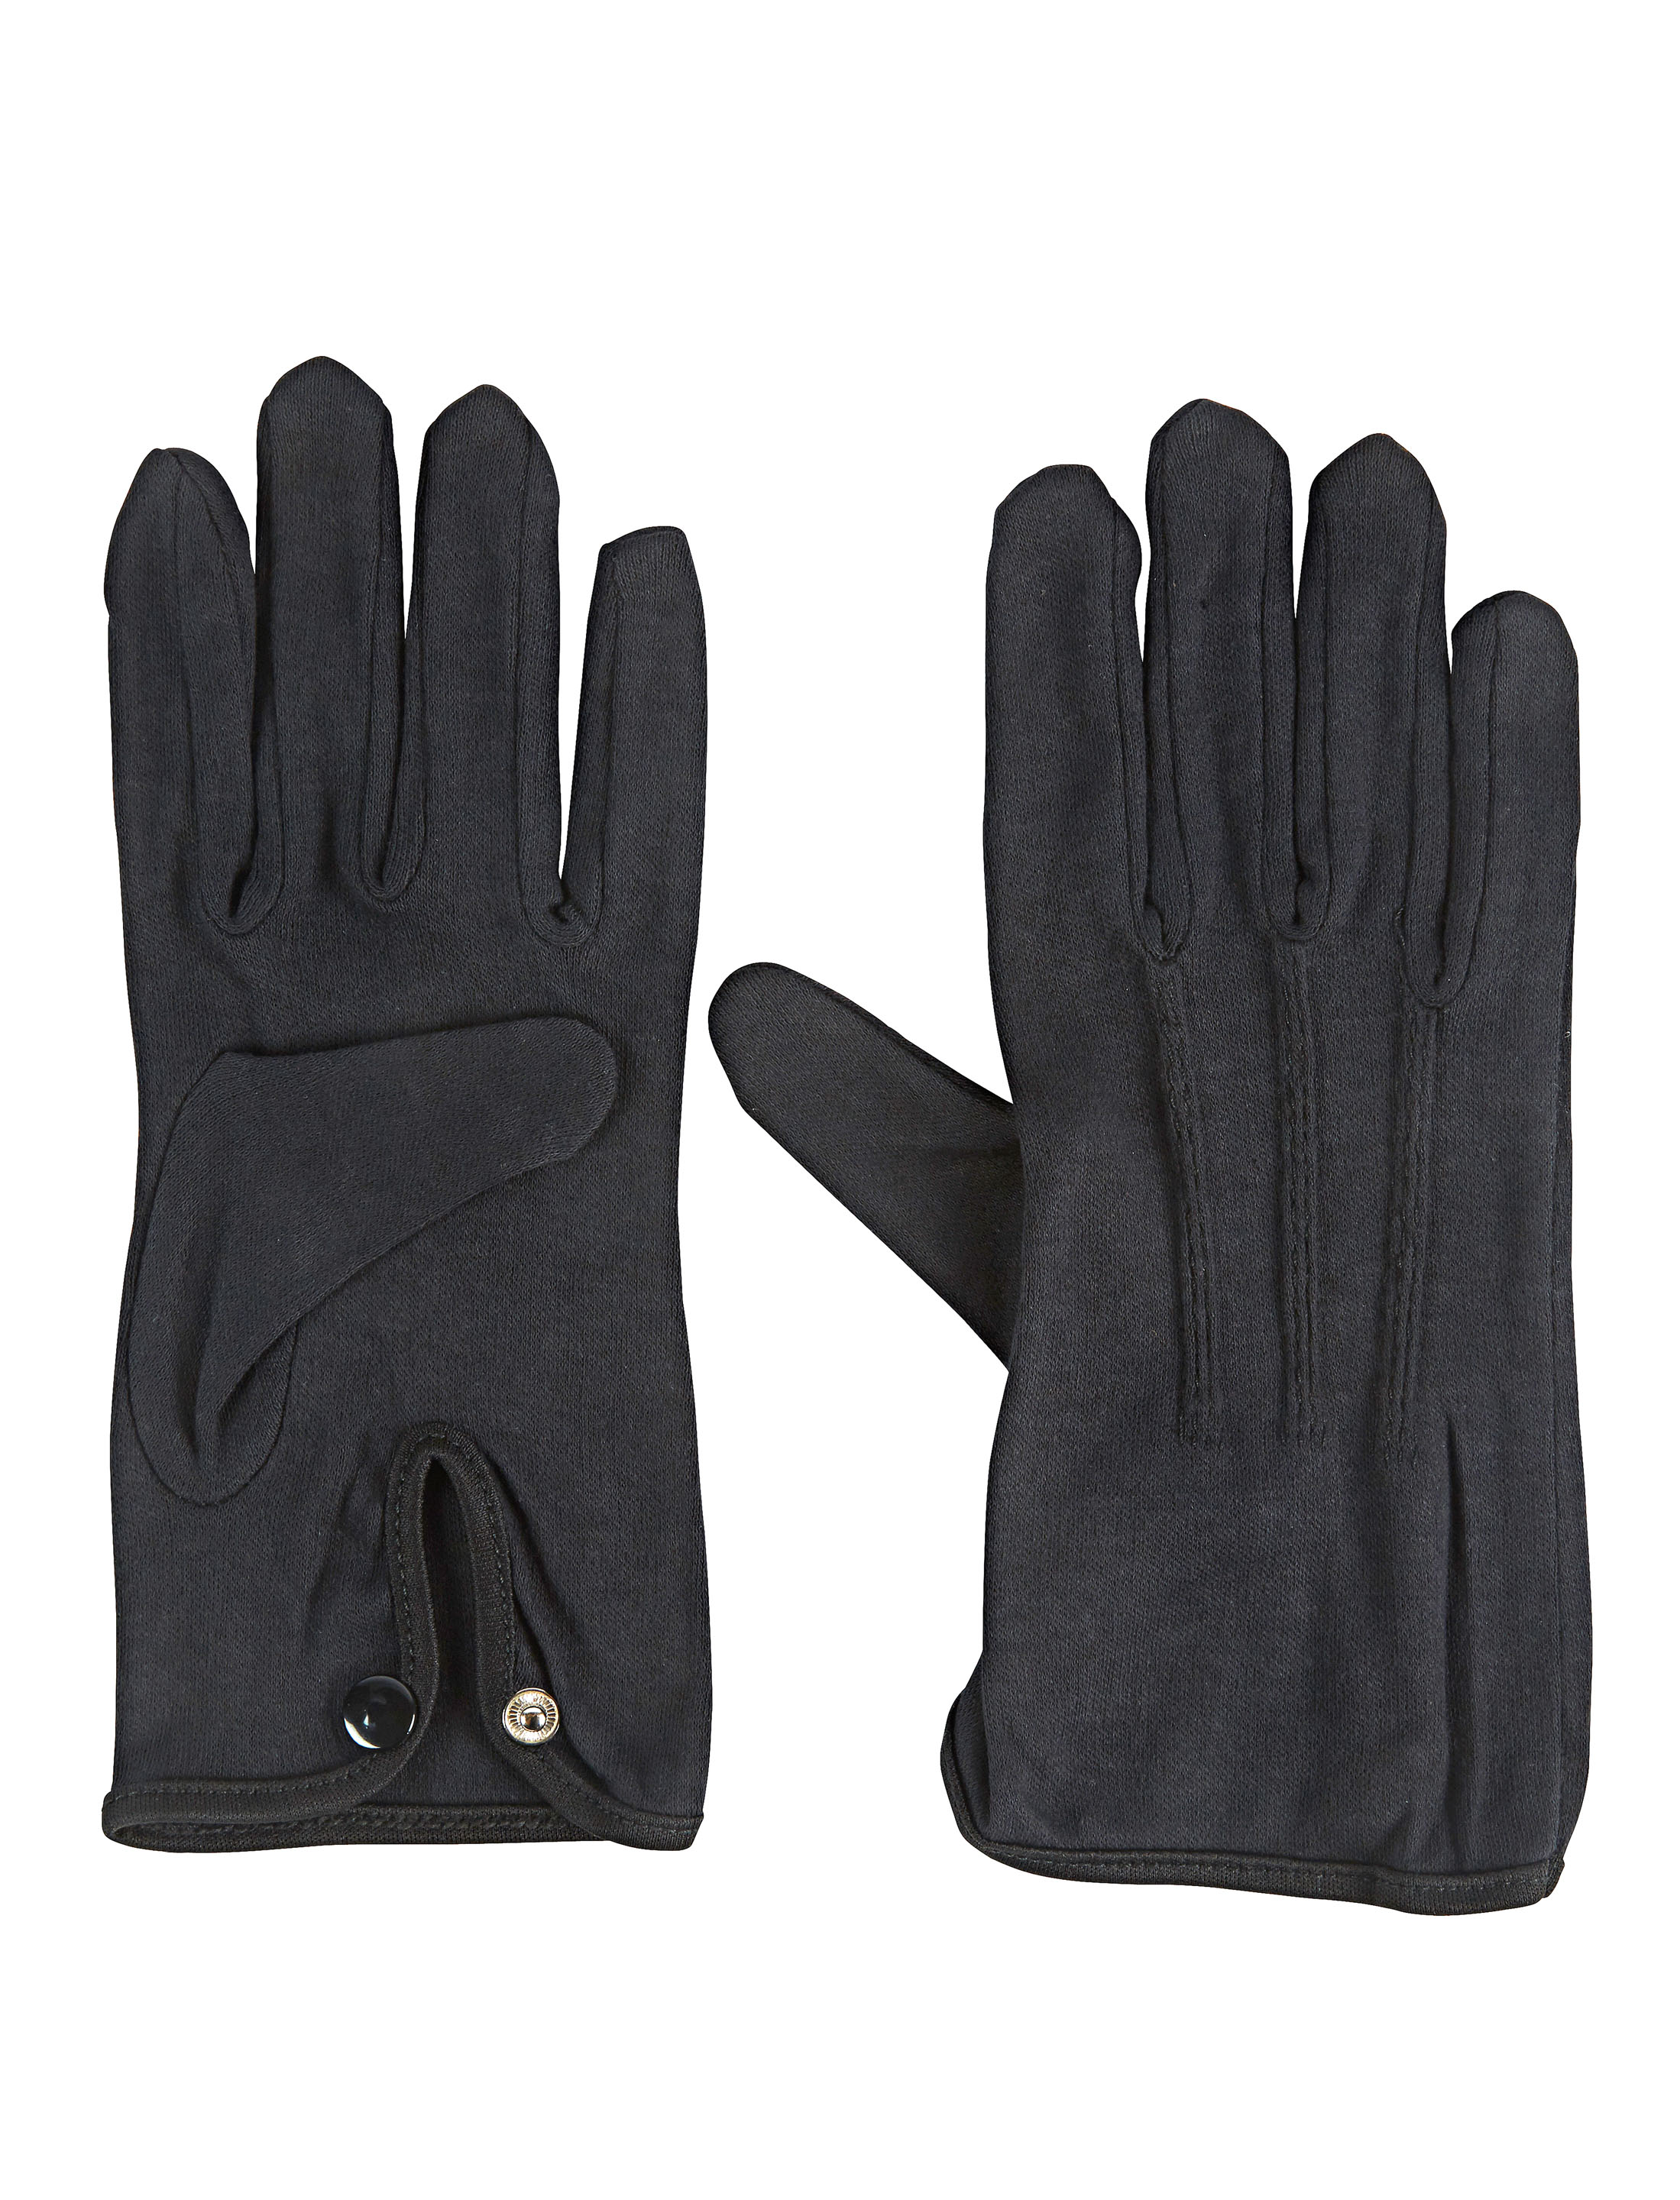 Handschuhe Baumwolle mit Knopf schwarz S